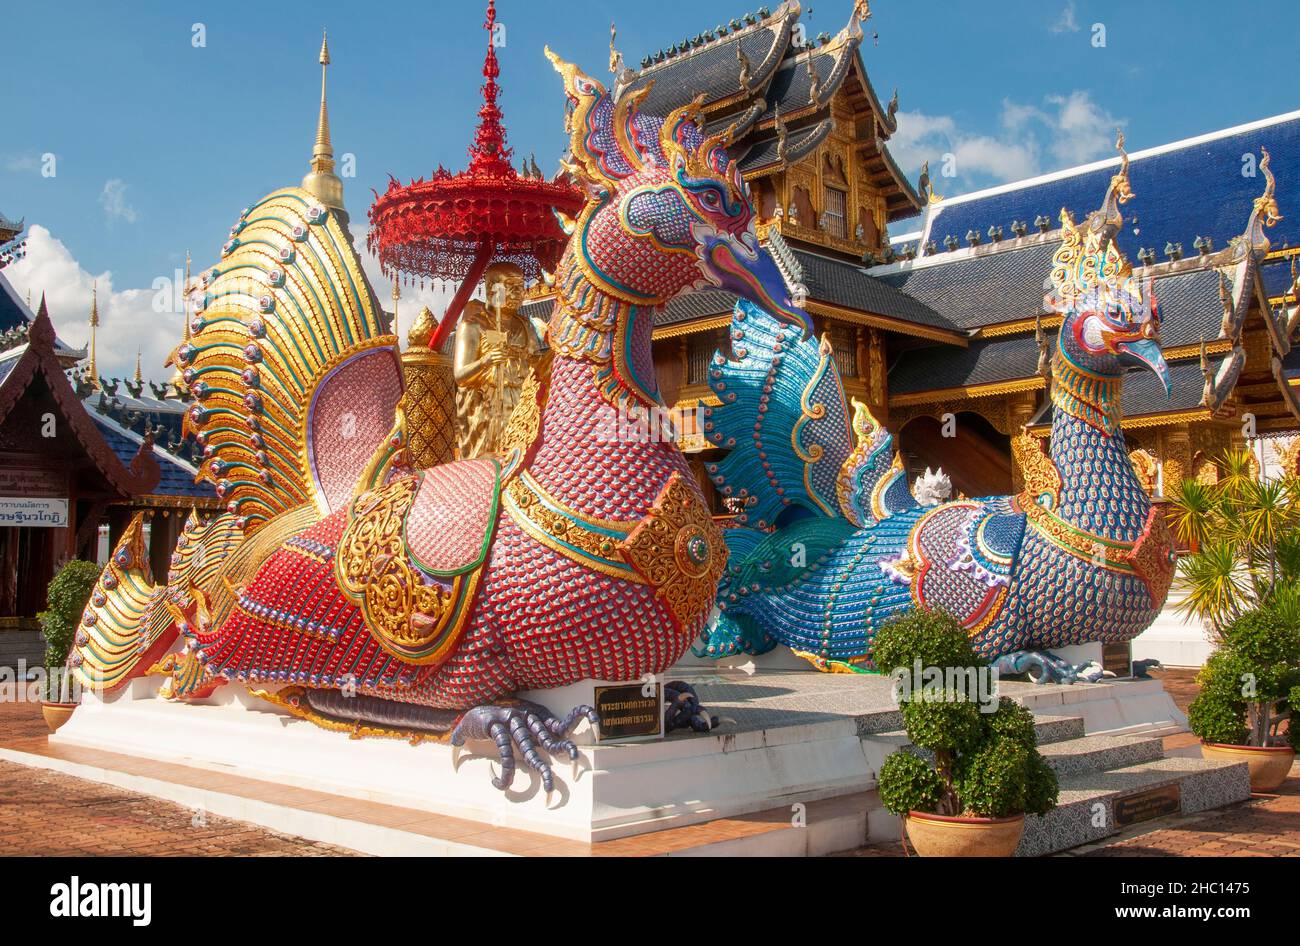 Tailandia: Hamsa o gansos sagrados en Wat Ban Den, Ban Inthain, distrito de Mae Taeng, Chiang Mai. Wat Ban Den, también conocido como Wat Bandensali Si Mueang Kaen, es un gran complejo de templos budistas al norte de la ciudad de Chiang Mai, en el norte de Tailandia. Foto de stock